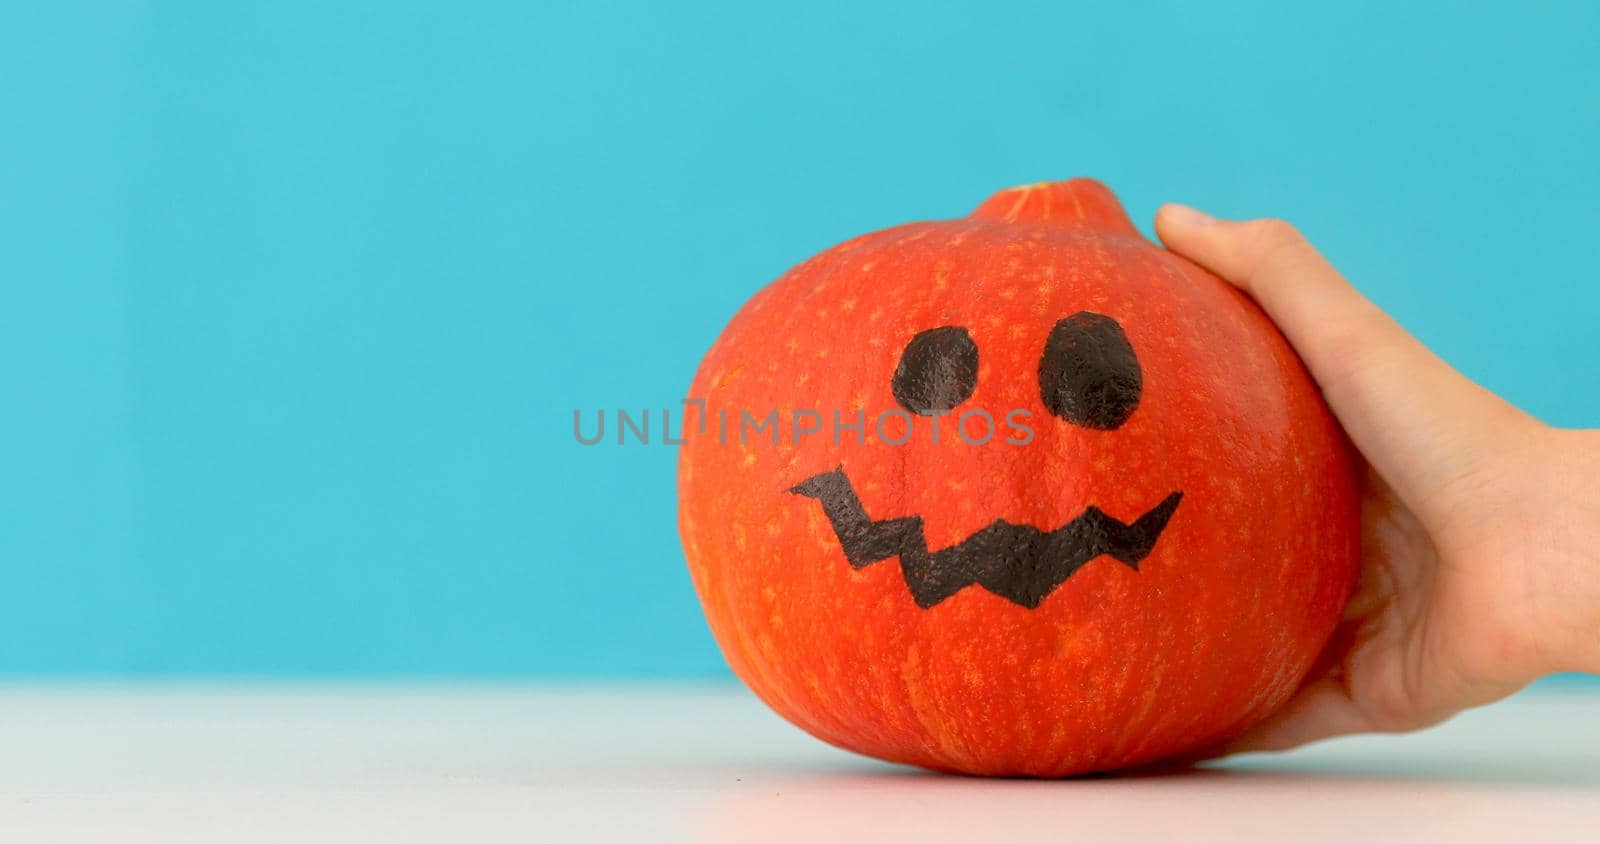 Little orange pumpkin dancing on blue background by Demkat